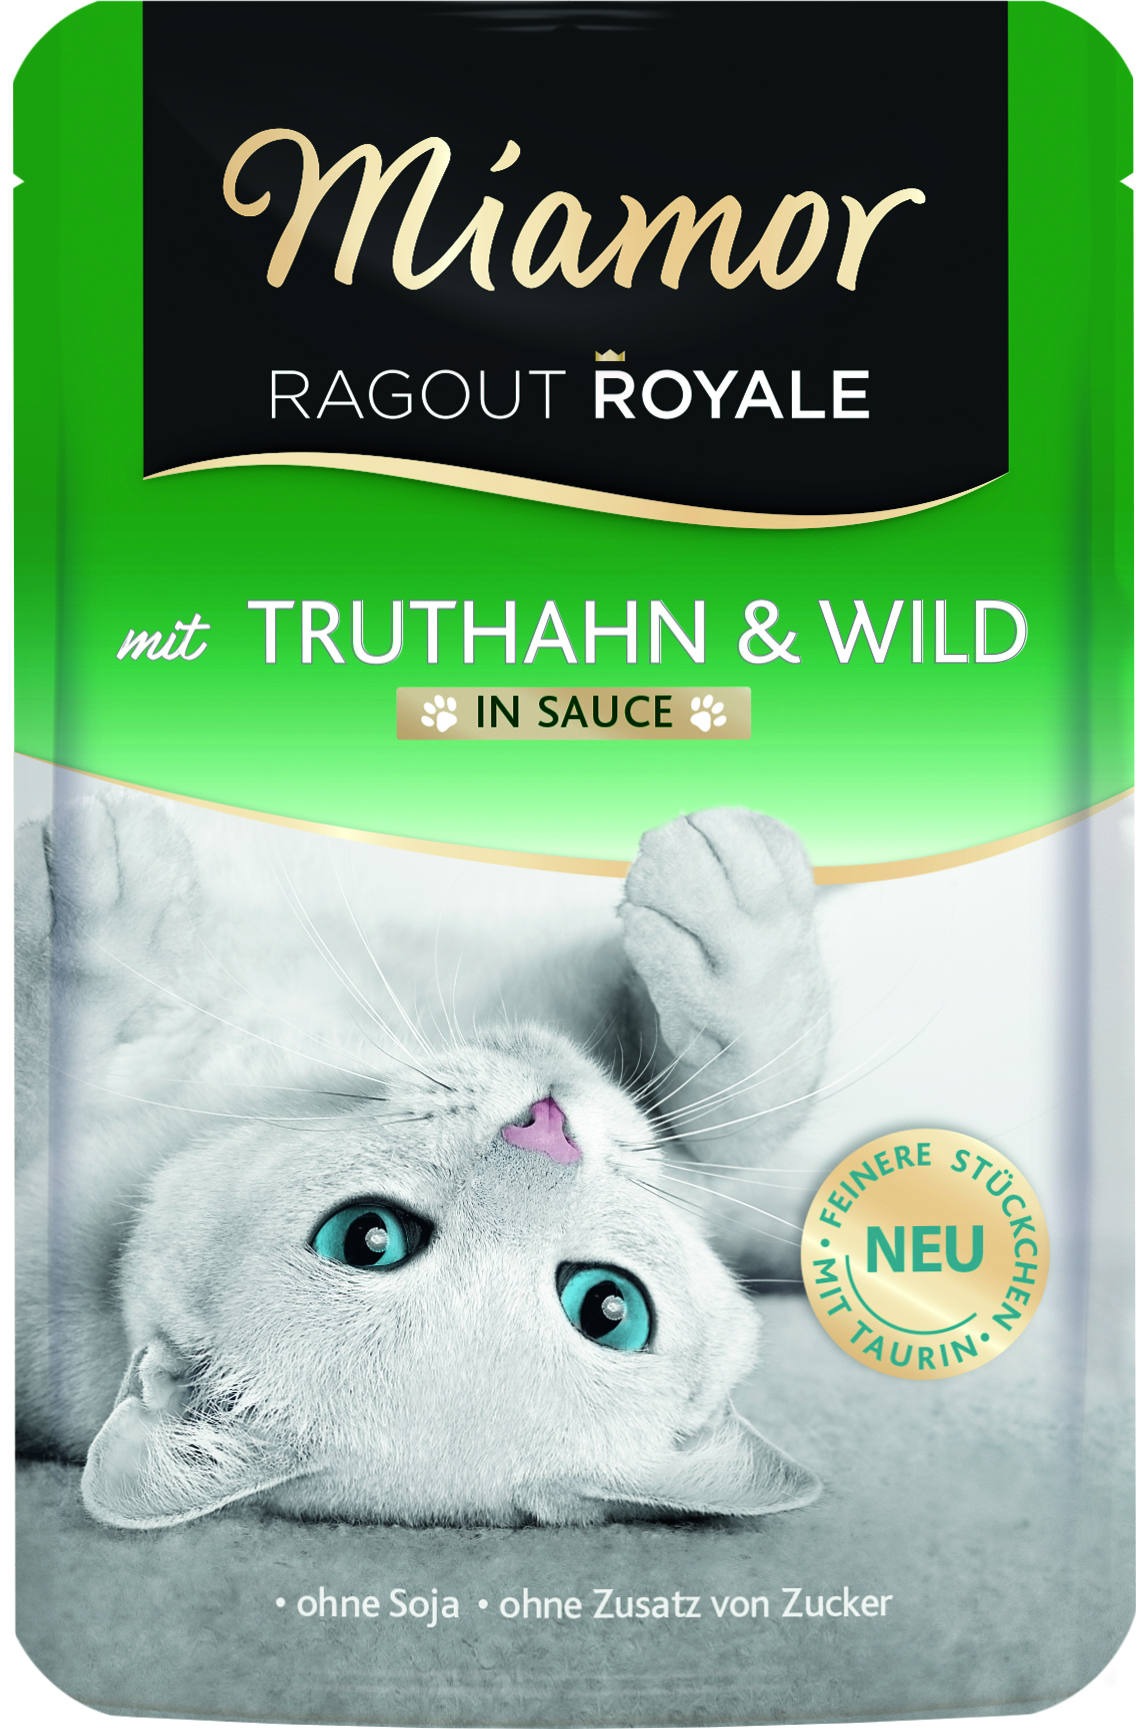 Miamor Ragout Royale Truthahn & Wild 100g